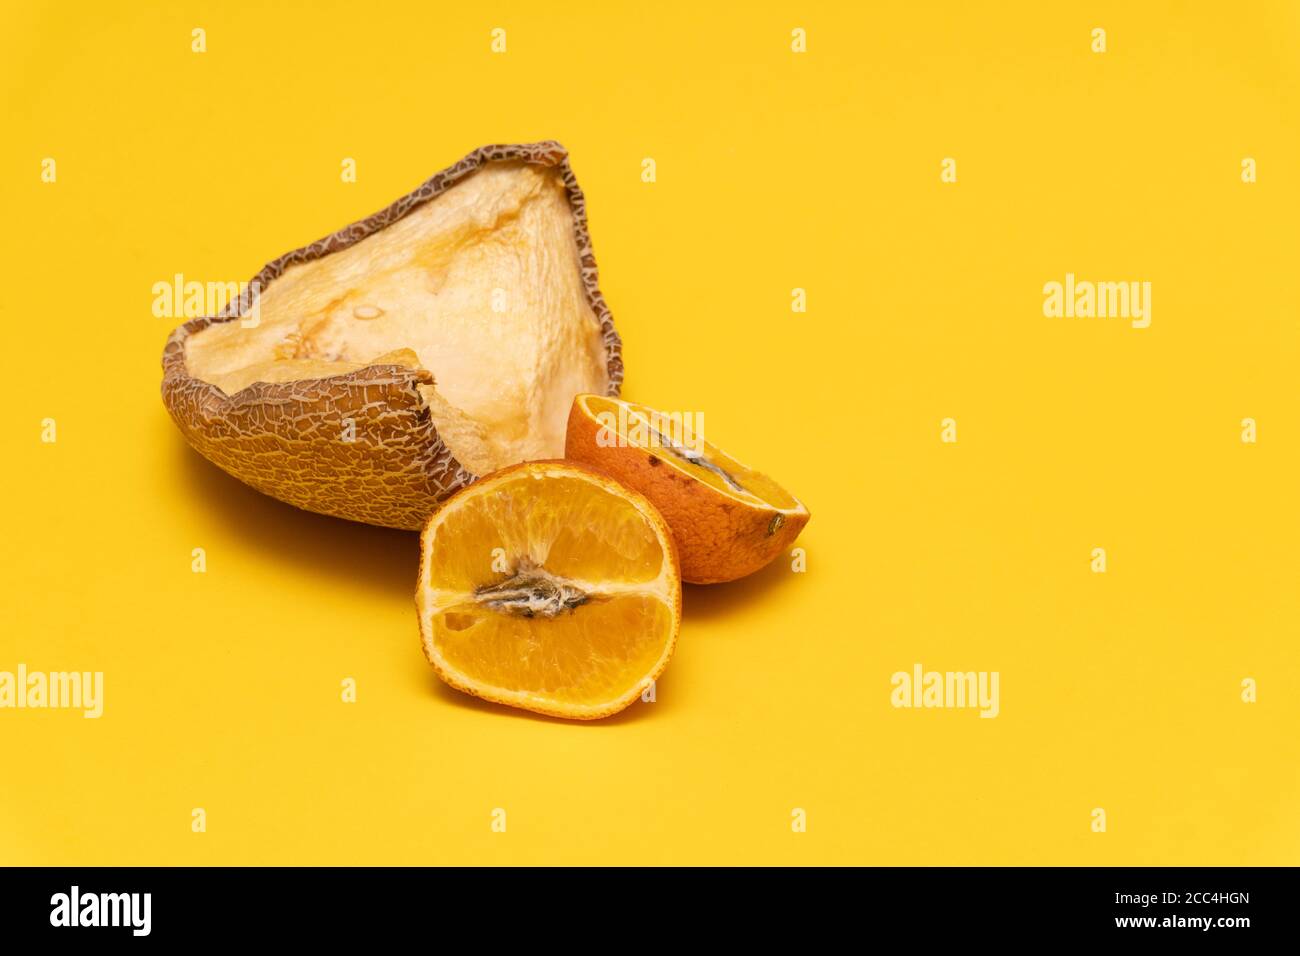 Composition créative avec melon jaune séché et mandarines orange mouleuses, fond jaune, non comestible Banque D'Images